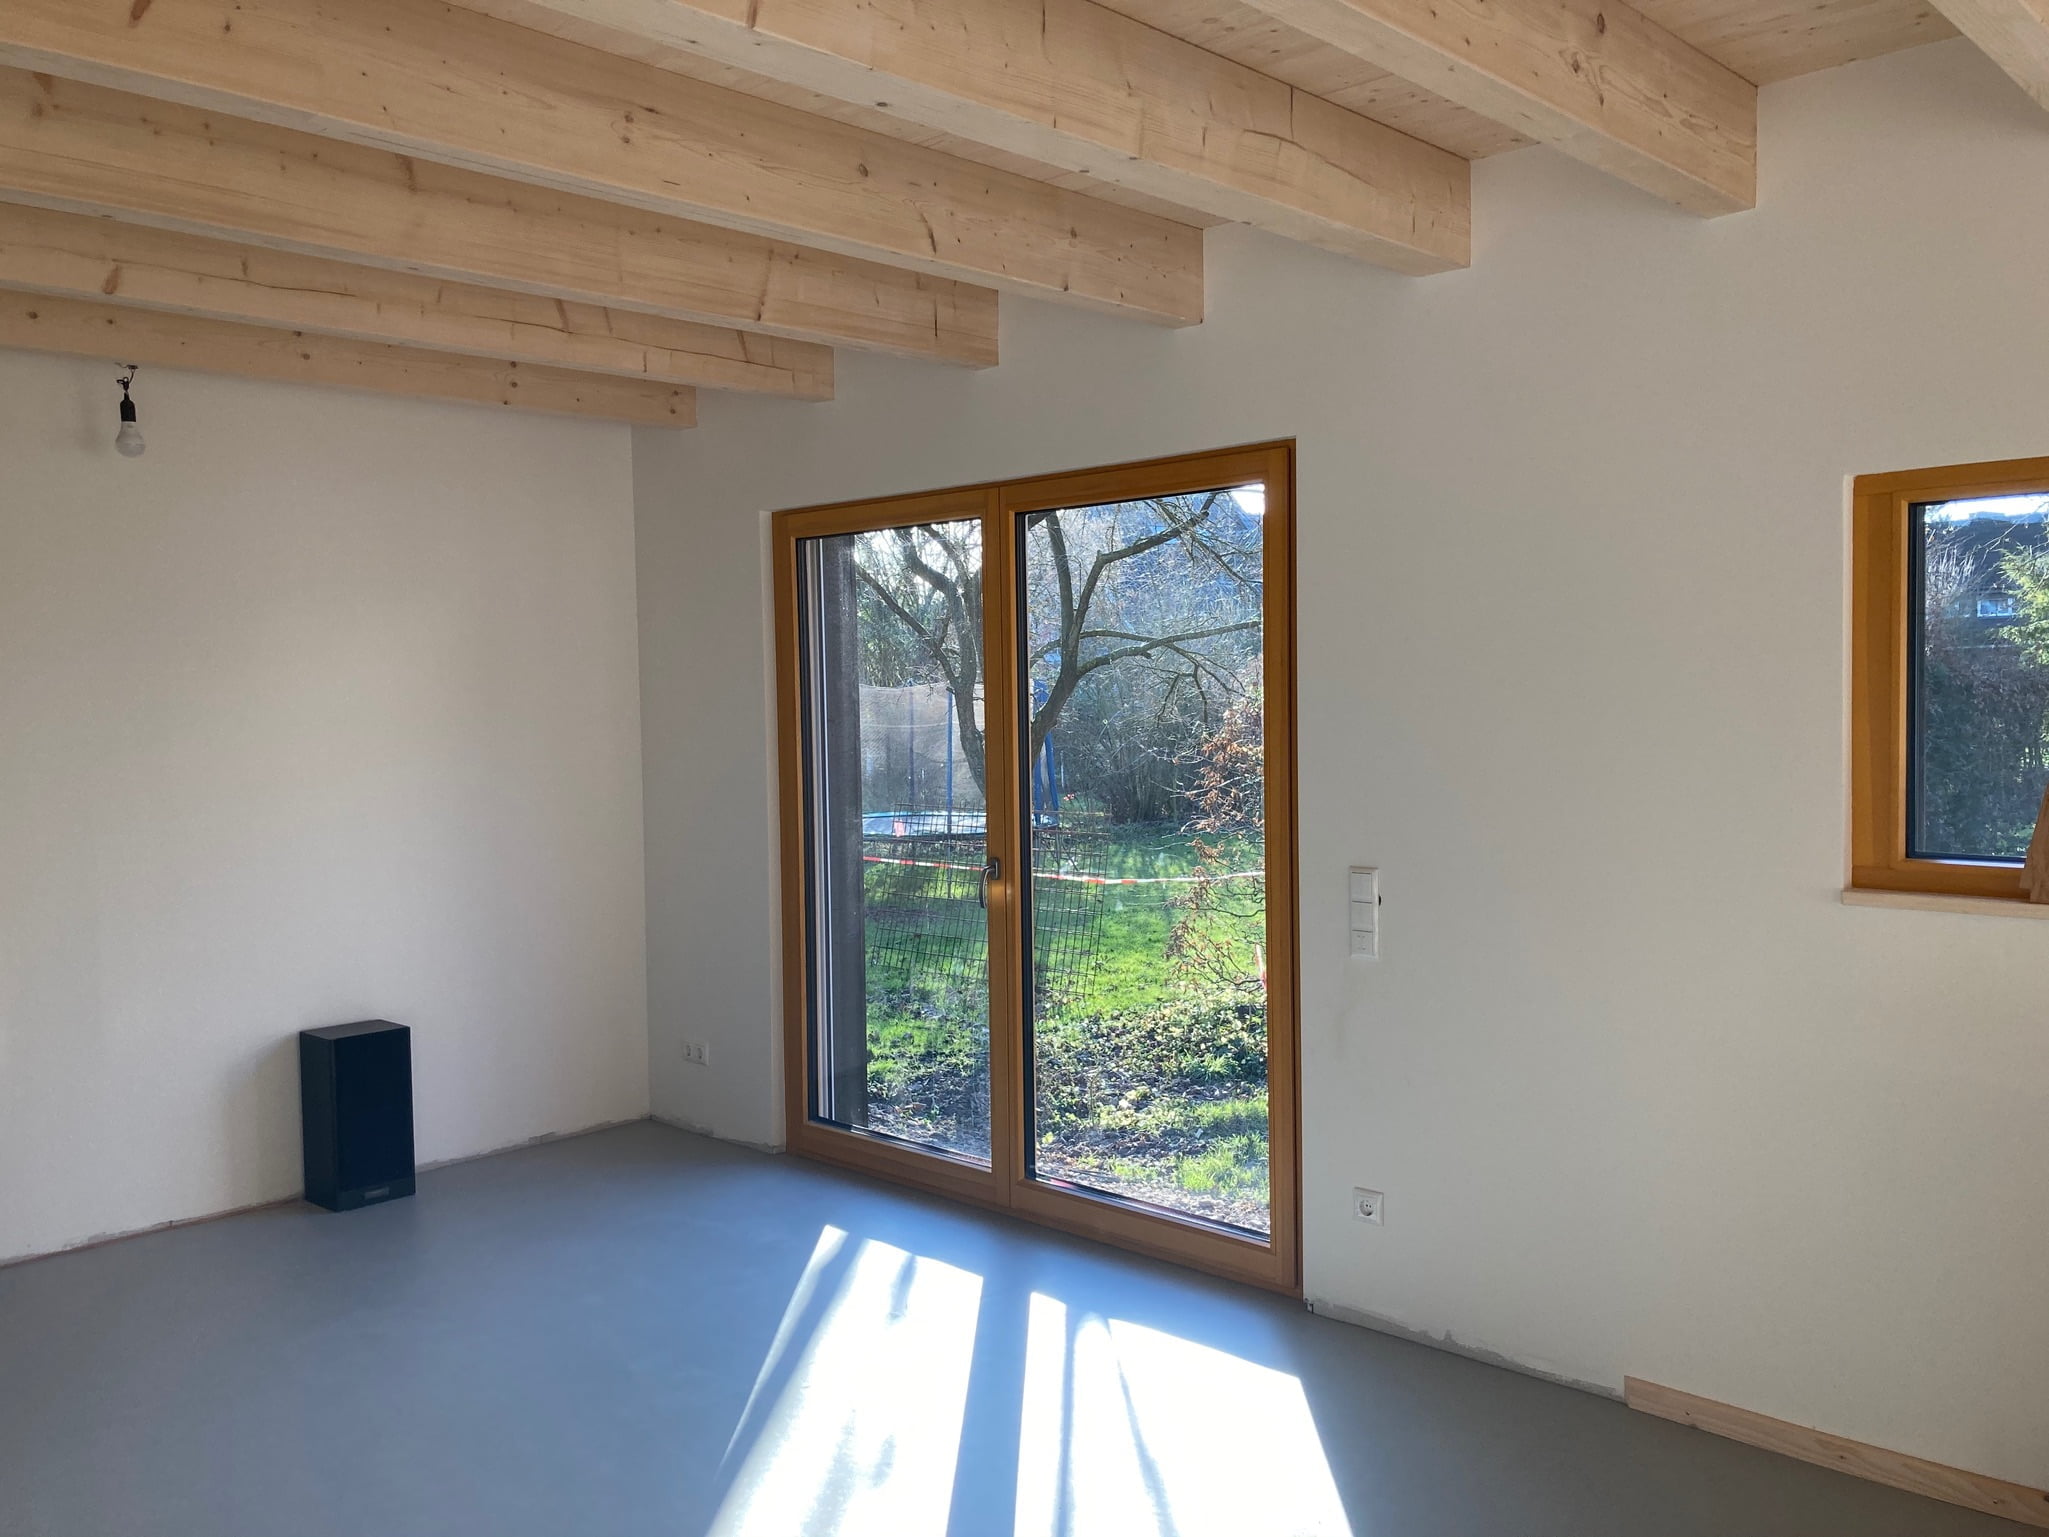 Inneneinsicht in den Wohnraum eines Holzhauses von Wohnbehagen mit bodentiefen Fenstern.